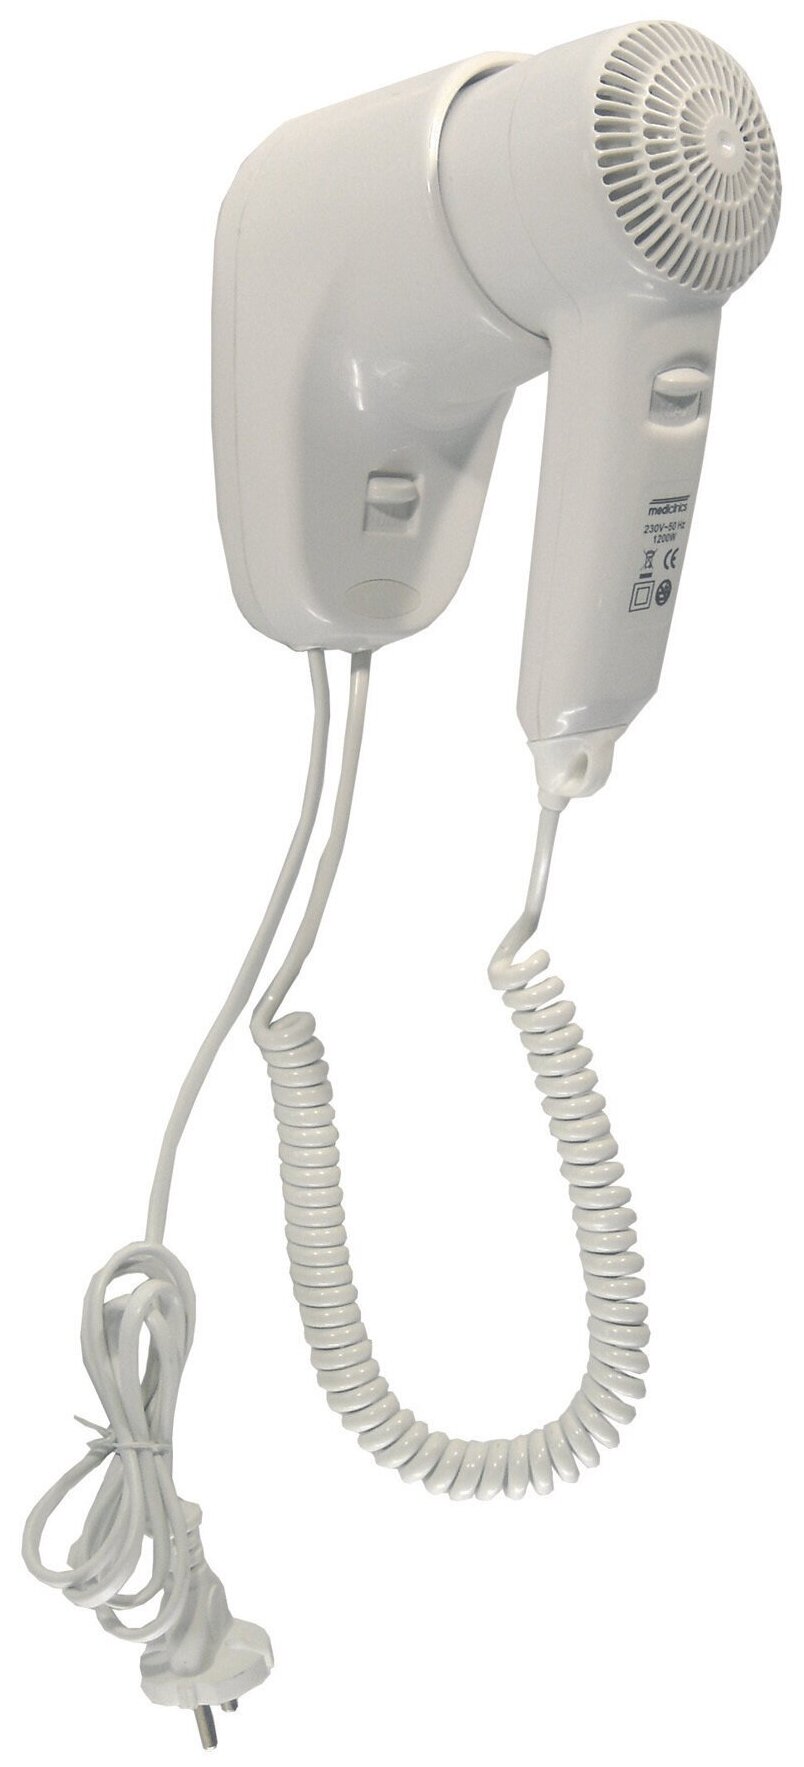 Фен настенный Mediclinics SC0010, индивидуальный, с кнопкой, материал: АБС-пластик, цвет: белый